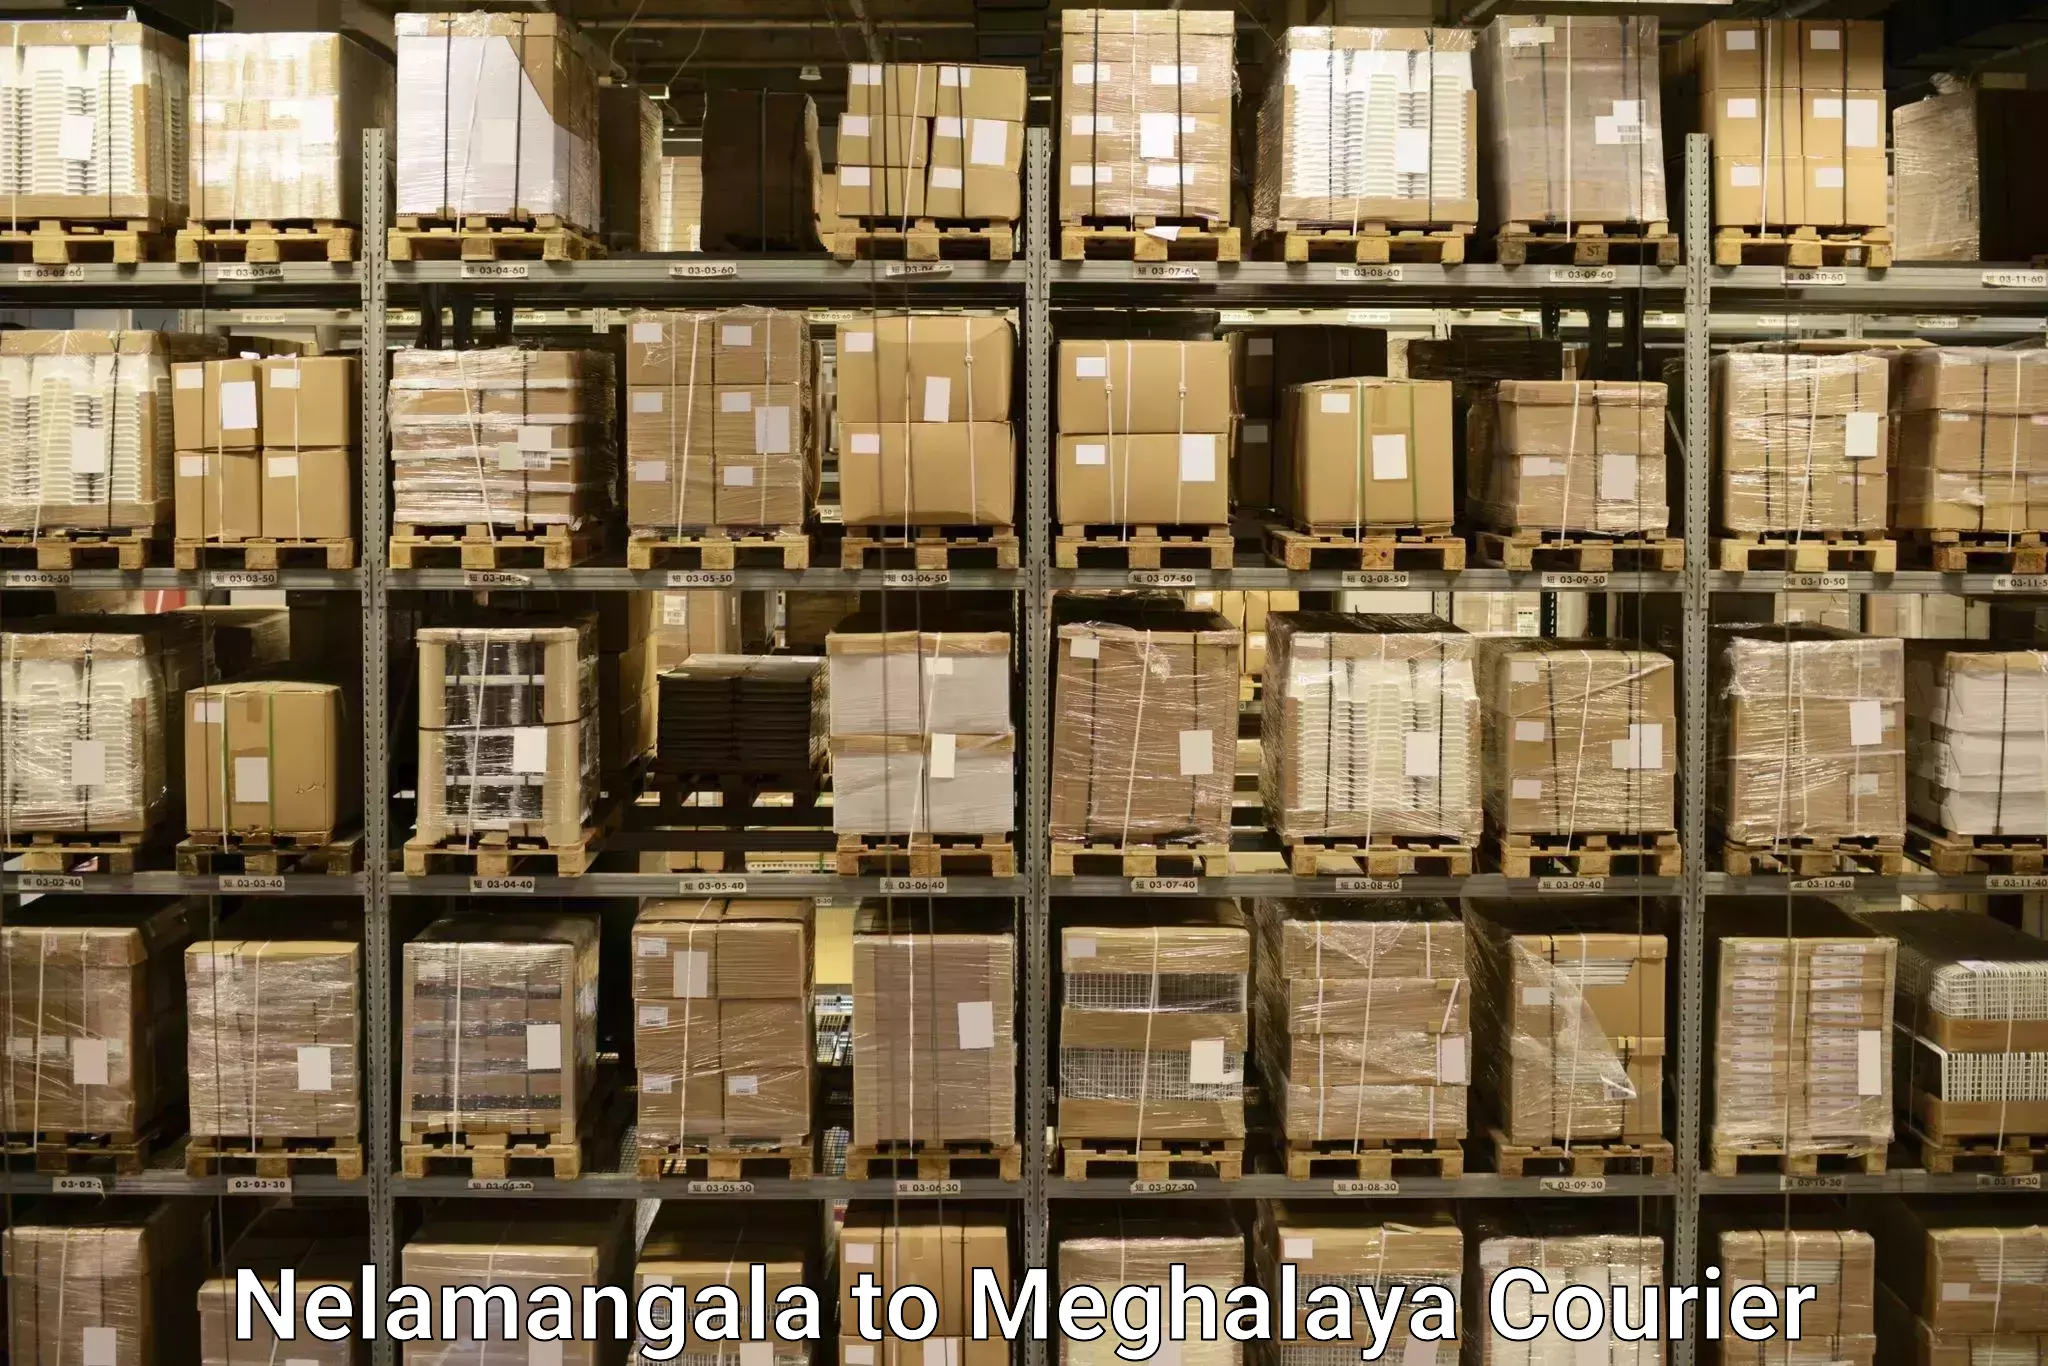 Baggage shipping experts Nelamangala to Meghalaya